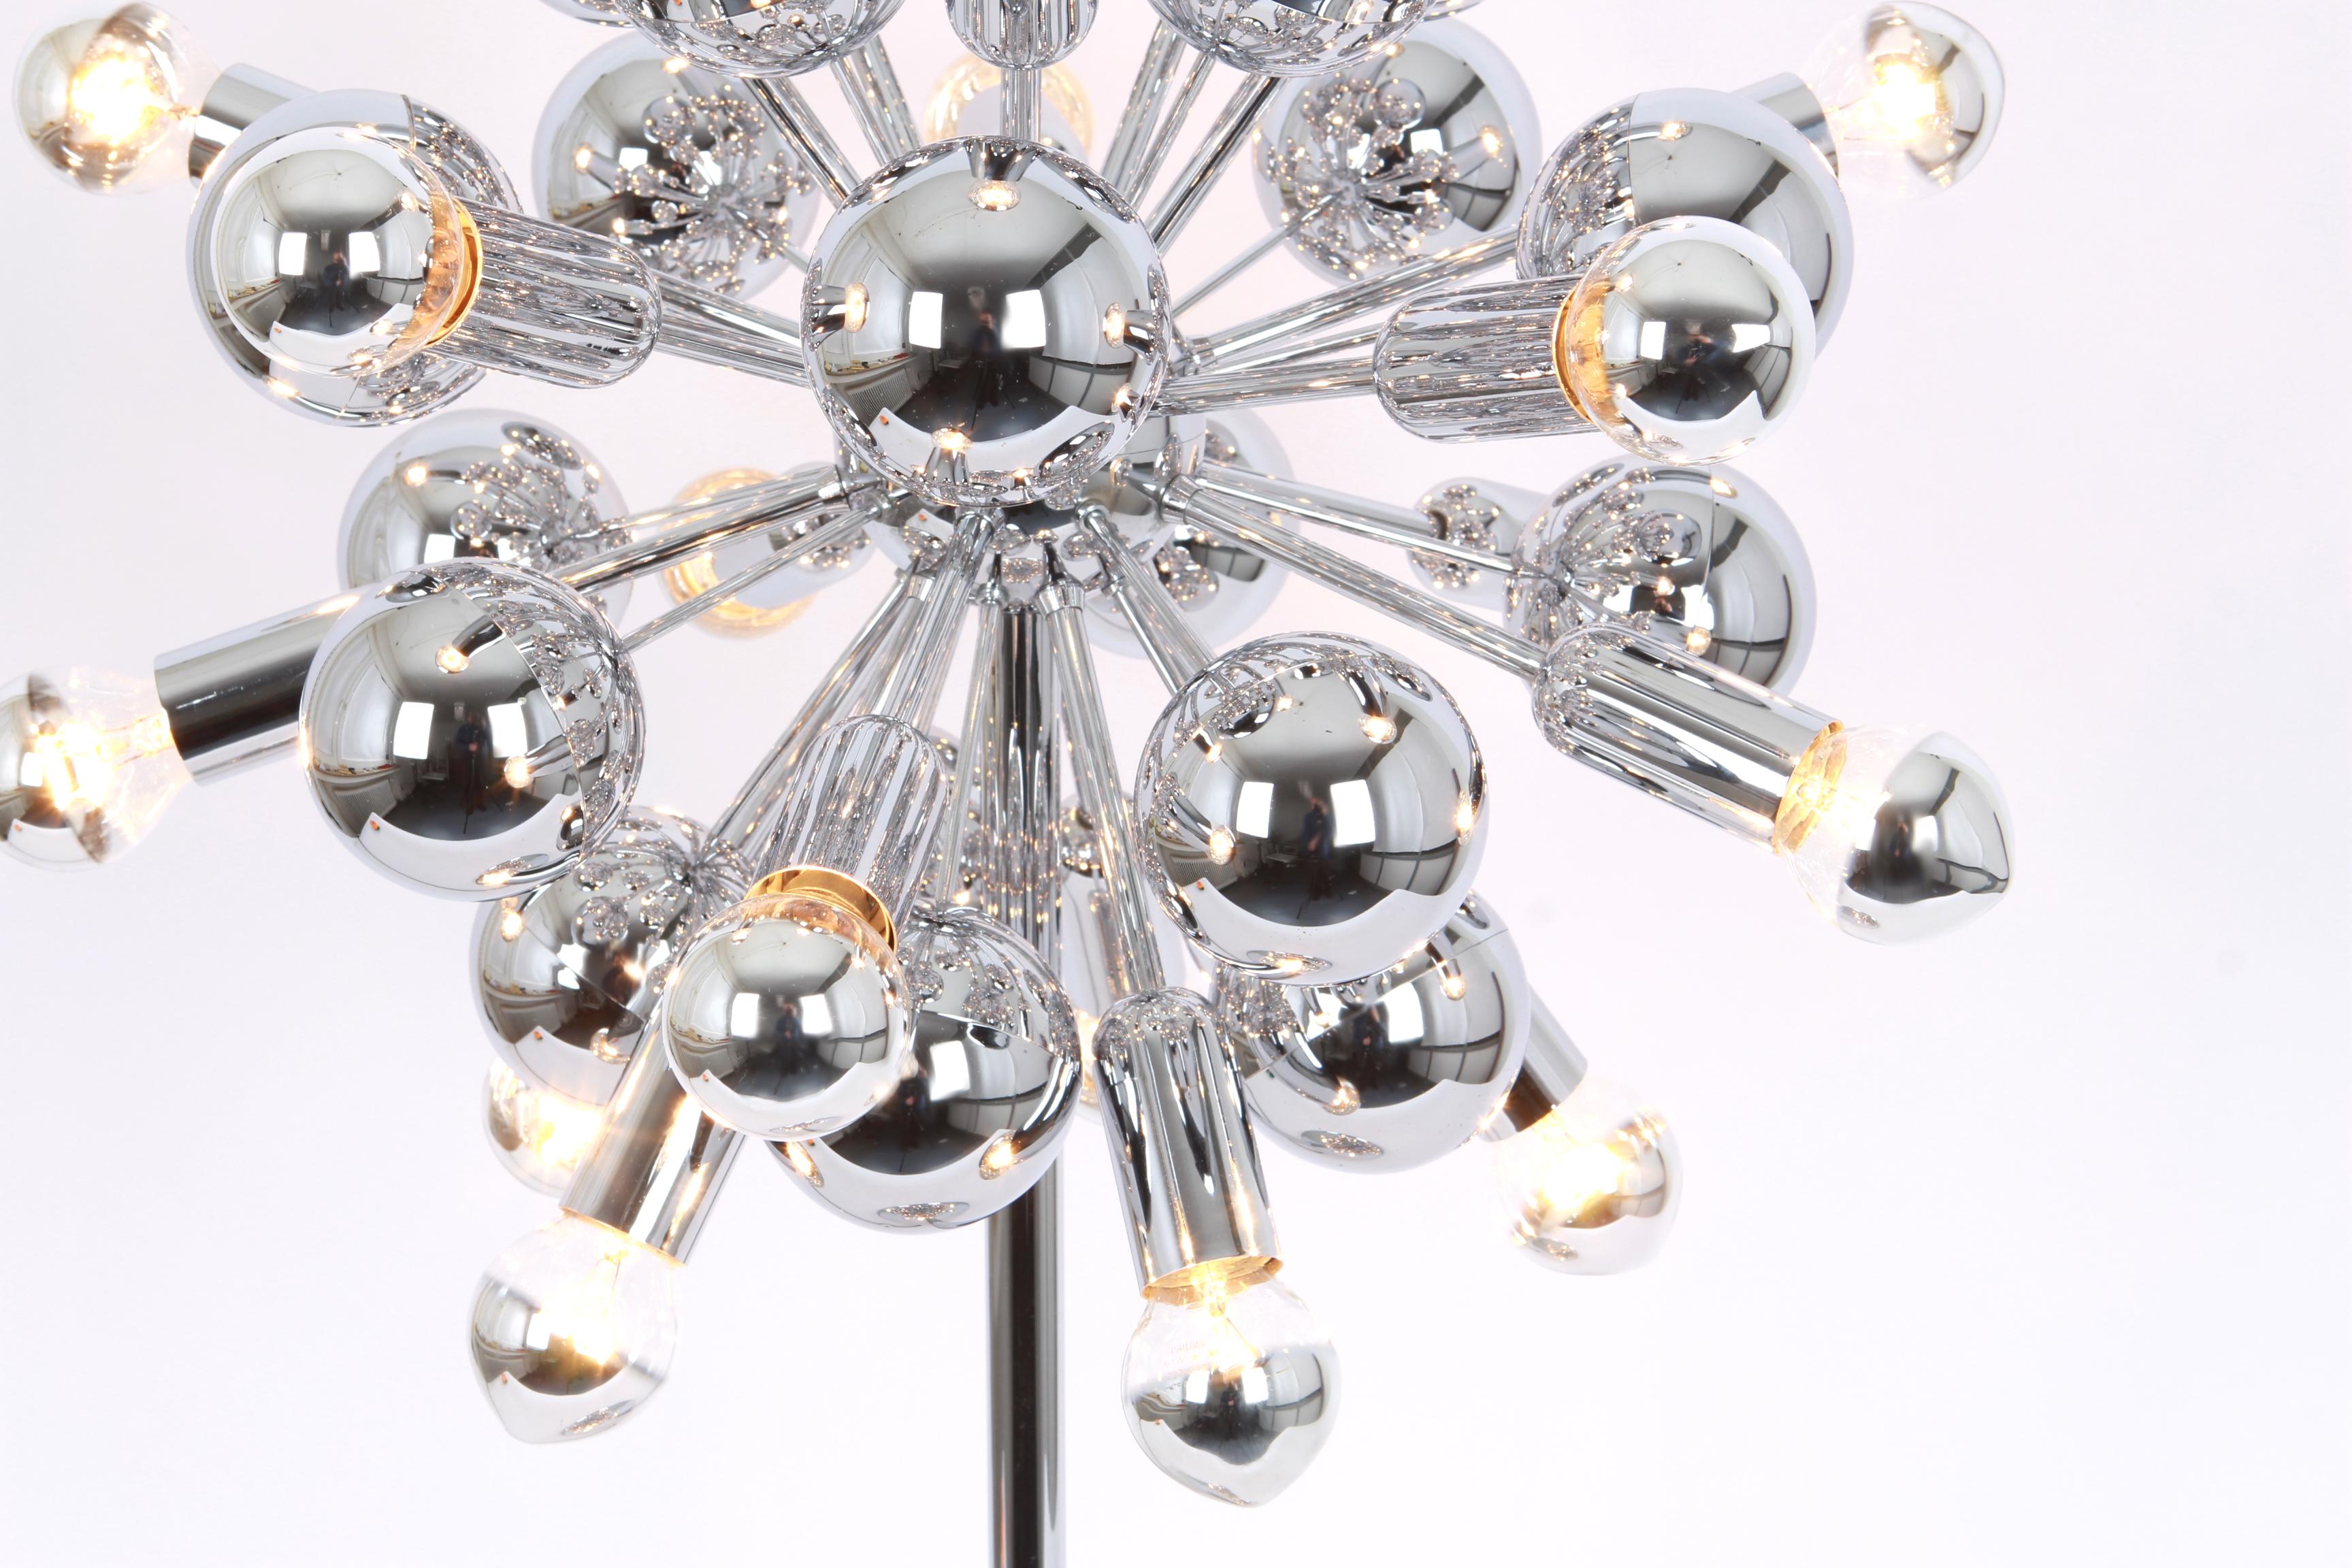 1 von 2 exklusiven silbernen Sputnik-Pendeltischlampen, die Cosack in den 1970er Jahren entworfen hat.

Fassungen: jede Lampe braucht 21 x E14 kleine Glühbirne und kompatibel mit den US, UK, etc... Standards
Abmessungen:
Durchmesser 16